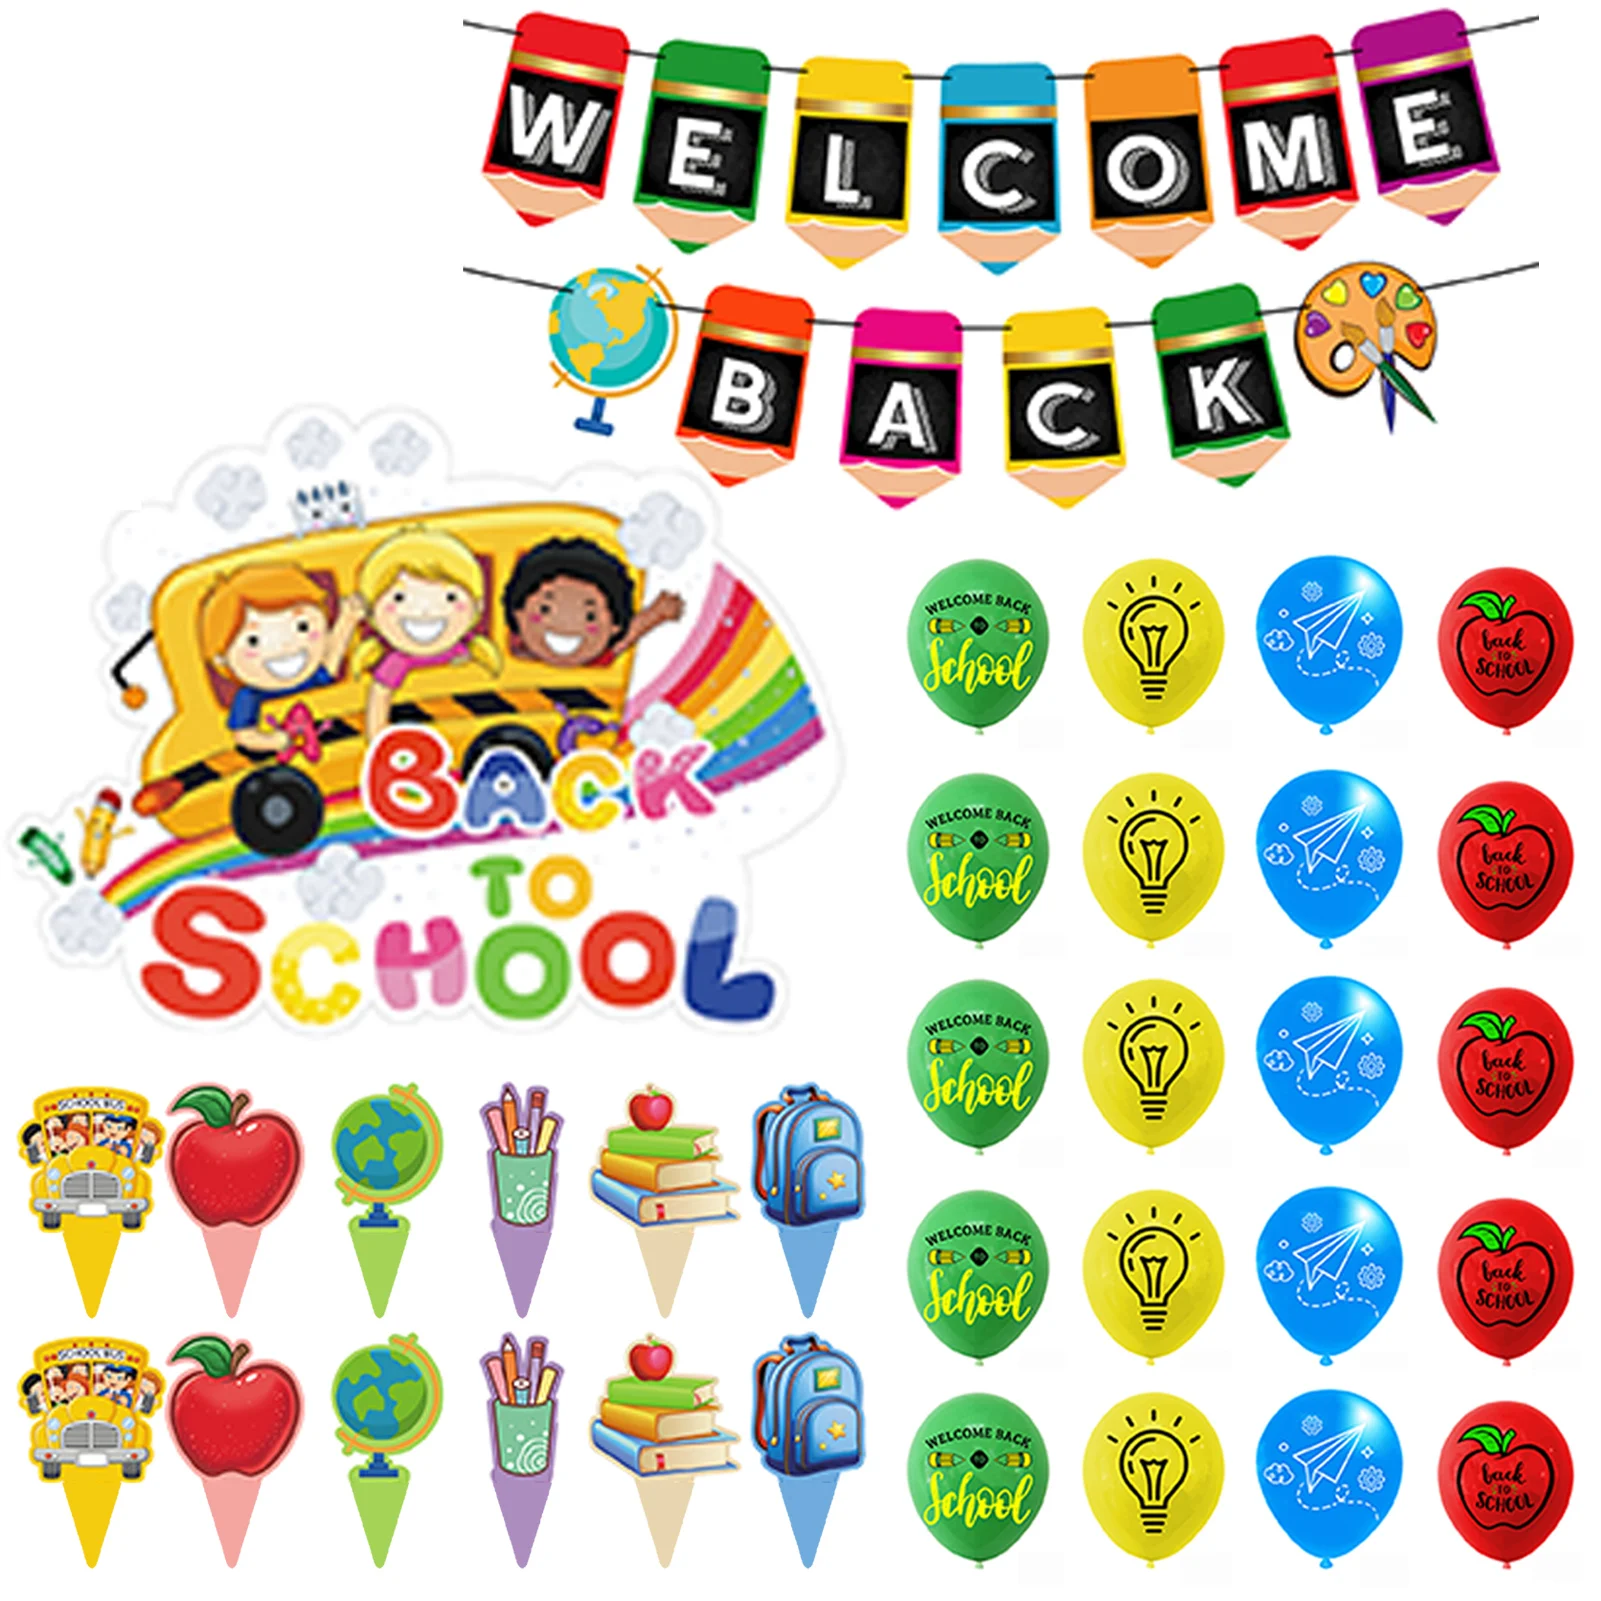 

Надувные шары для первого дня школы, баннер для вечеривечерние, набор воздушных шаров для тематической вечеринки, баннер, латексные шары, то...